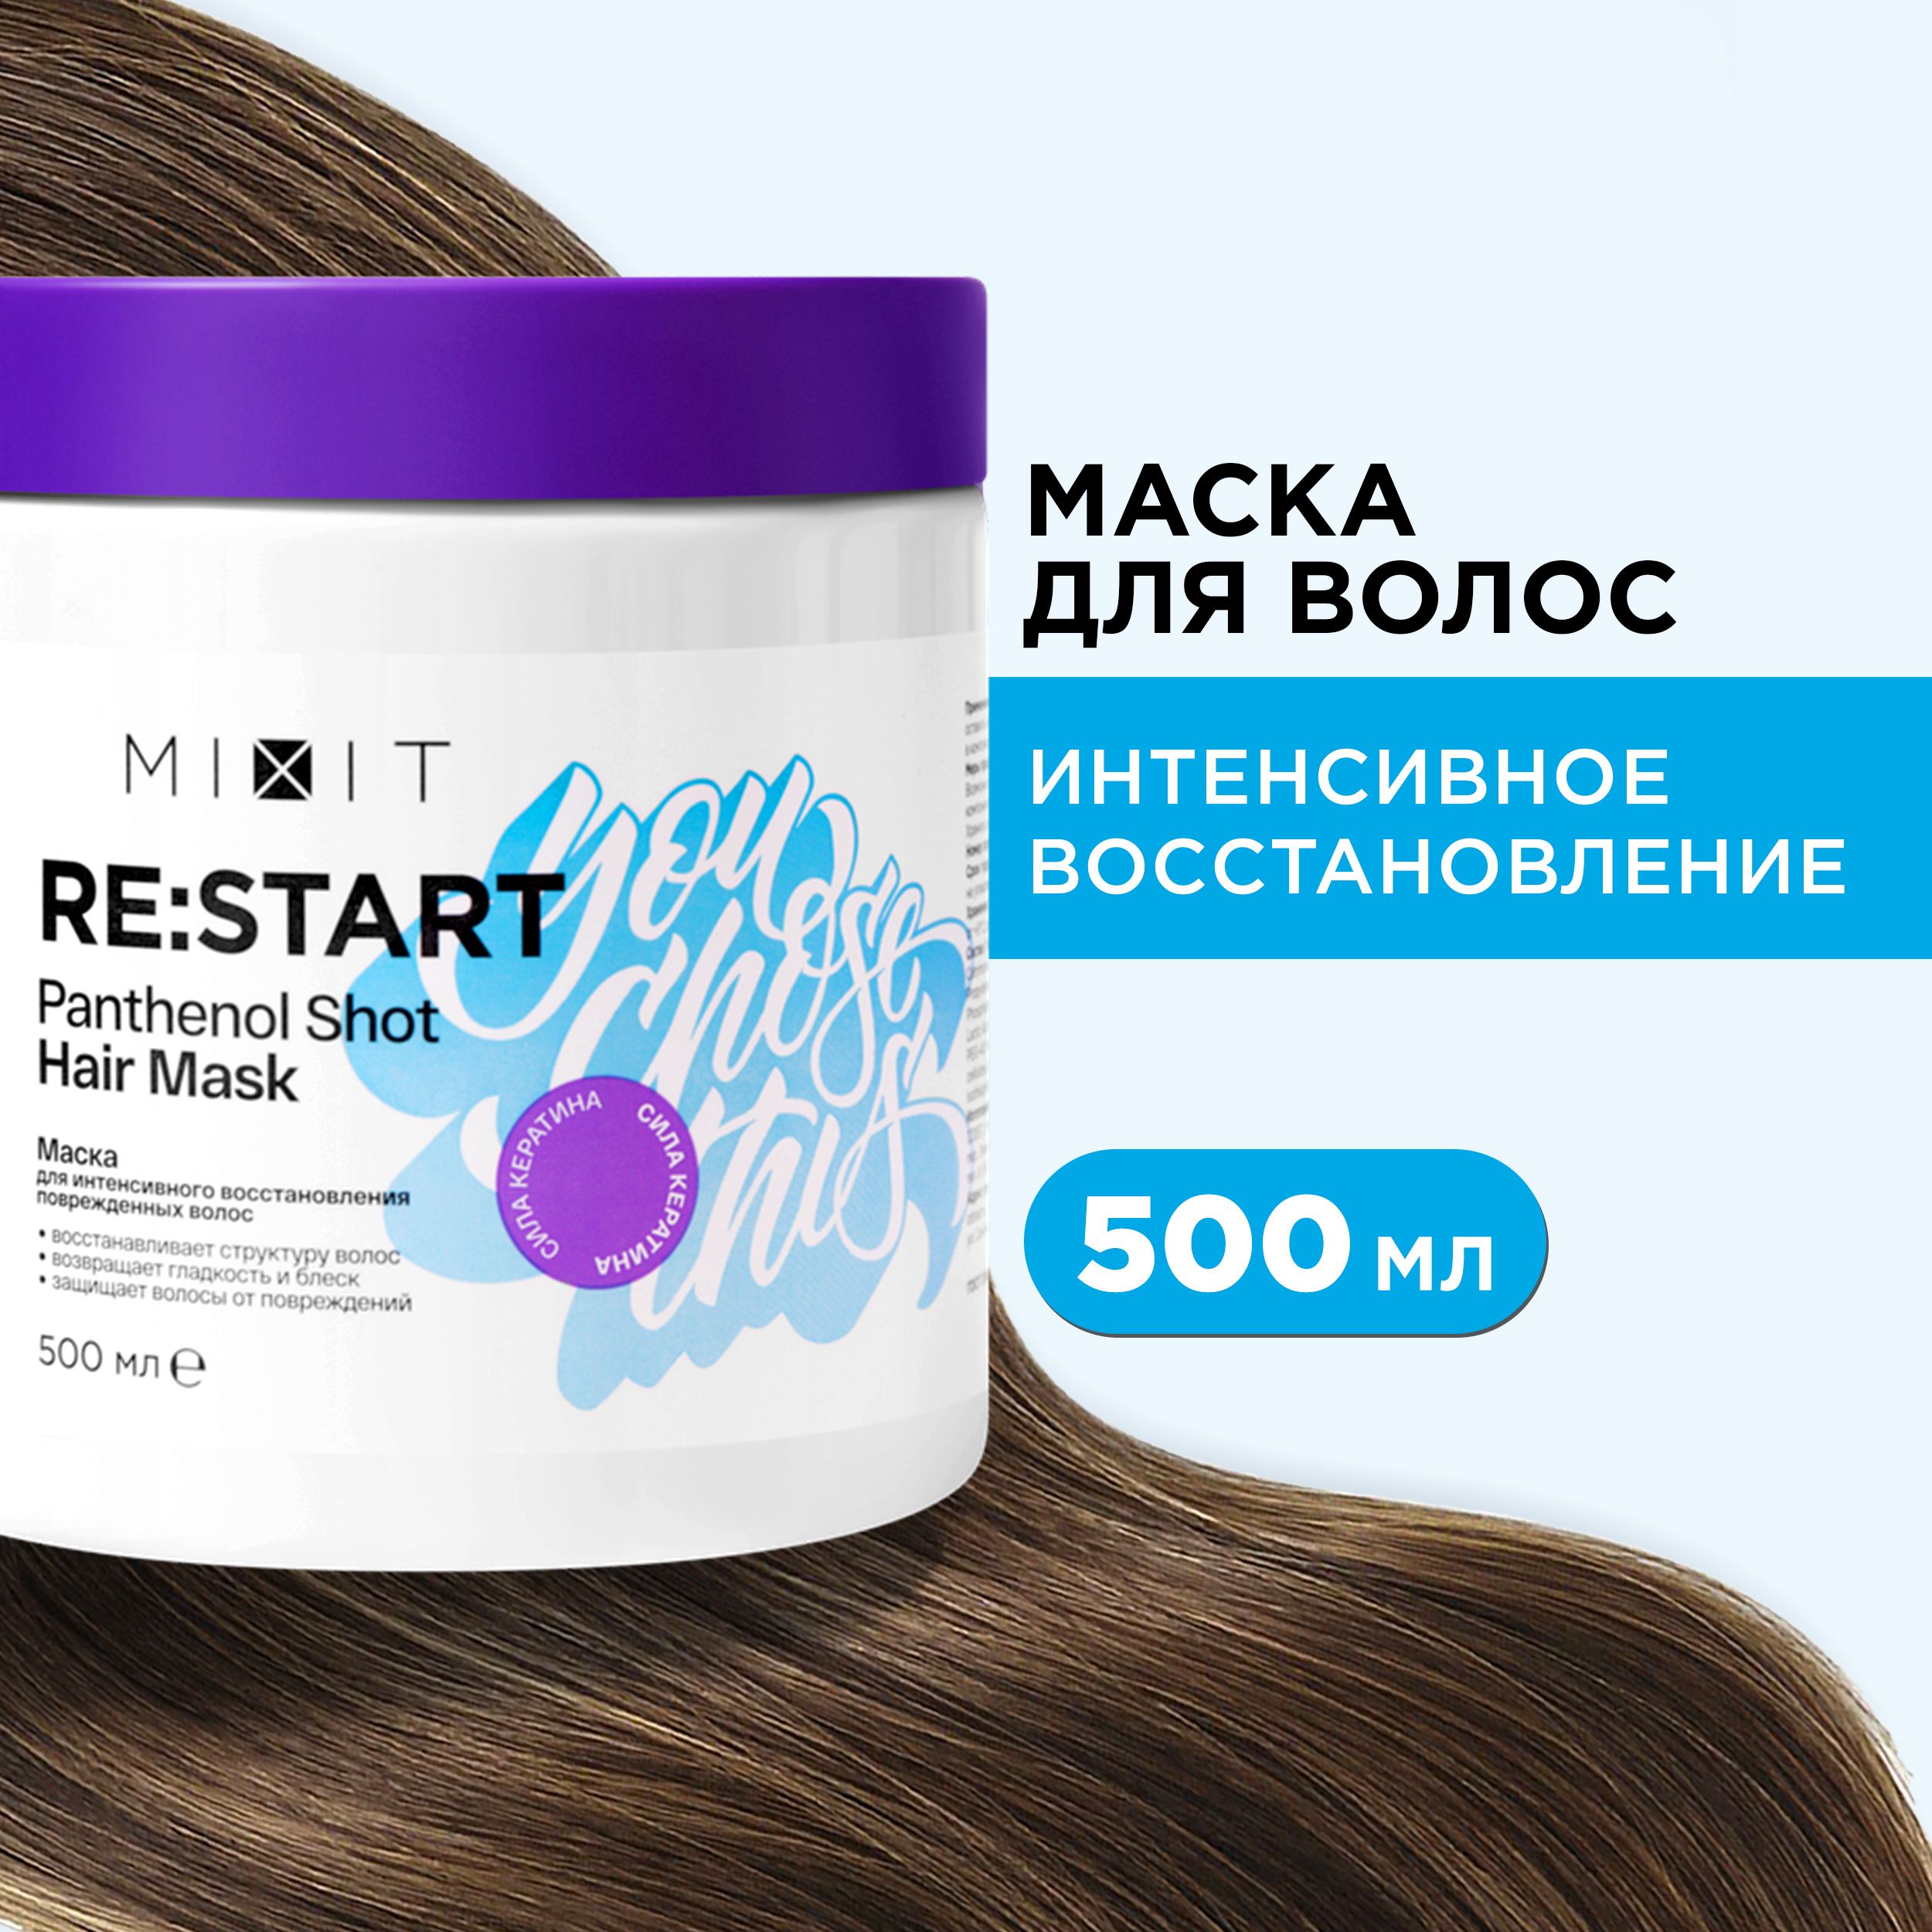 Укрепляющая маска MIXIT RESTART Hair Mask с пантенолом и маслами для гладкости 500 мл крем спрей mixit re start perfect hair для волос многофункциональный 15 в 1 250 мл